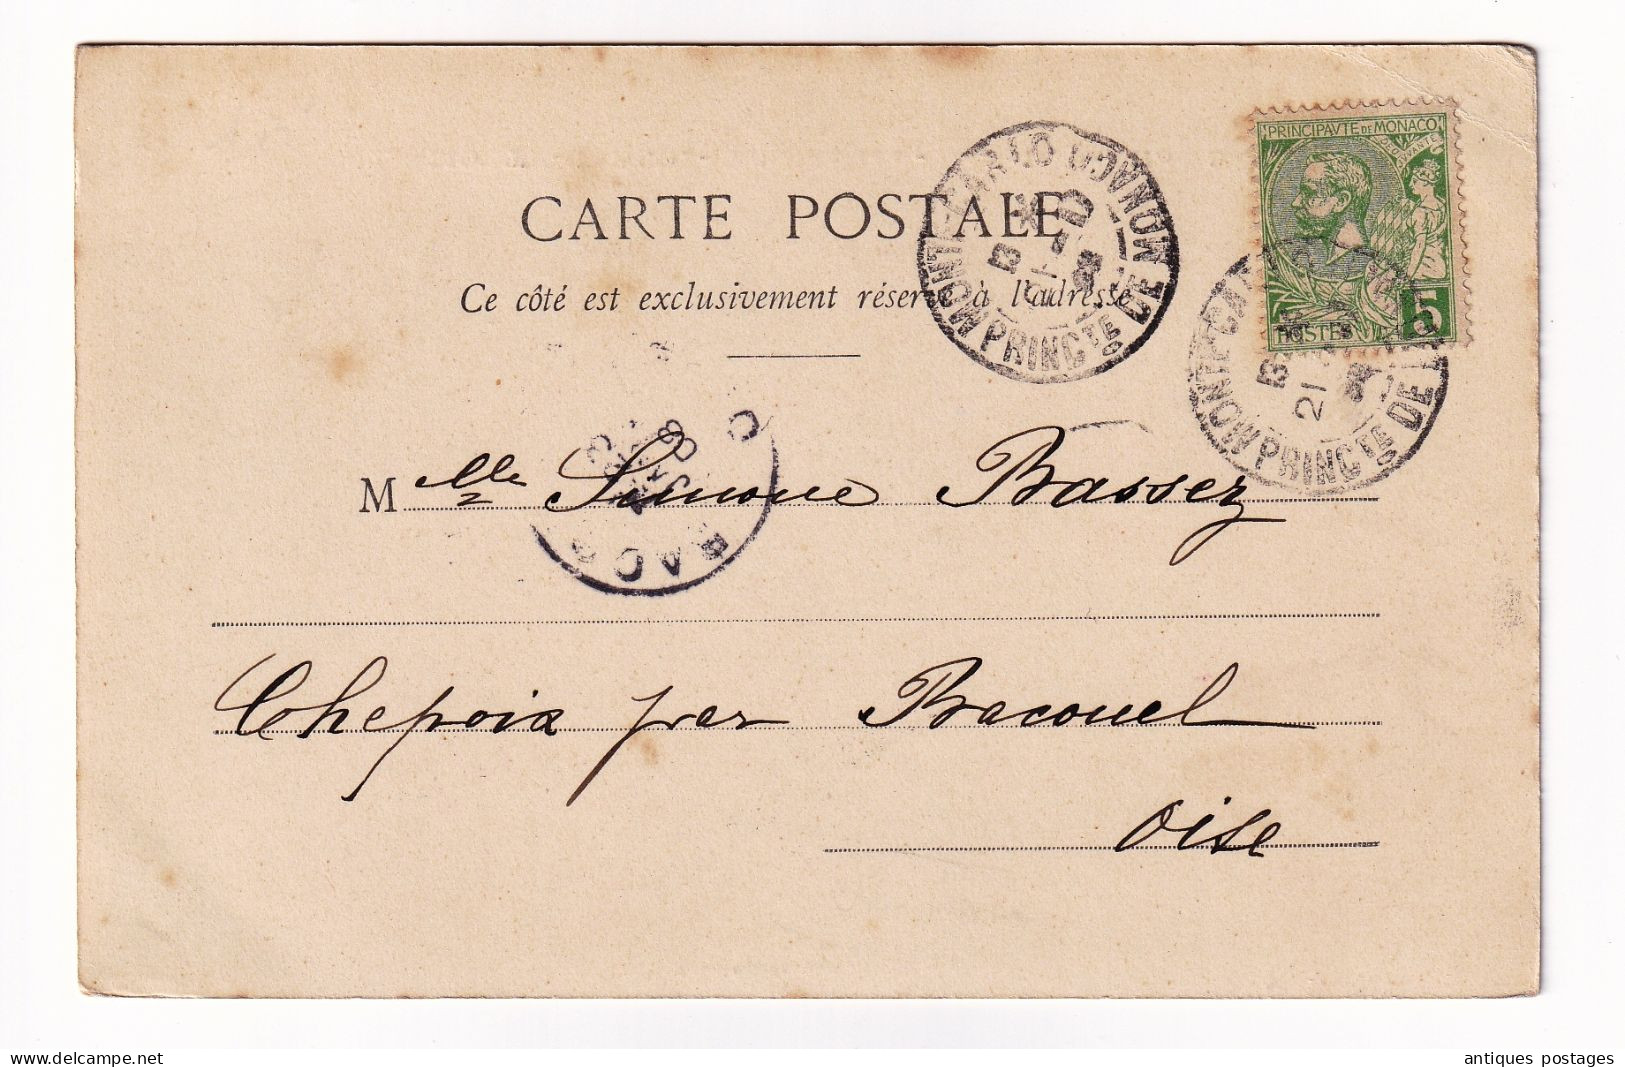 Carte Postale 1908 Monte Carlo Monaco Chepoix Oise Salle De Jeu - Peinture Le Soir Par Hodebert - Covers & Documents